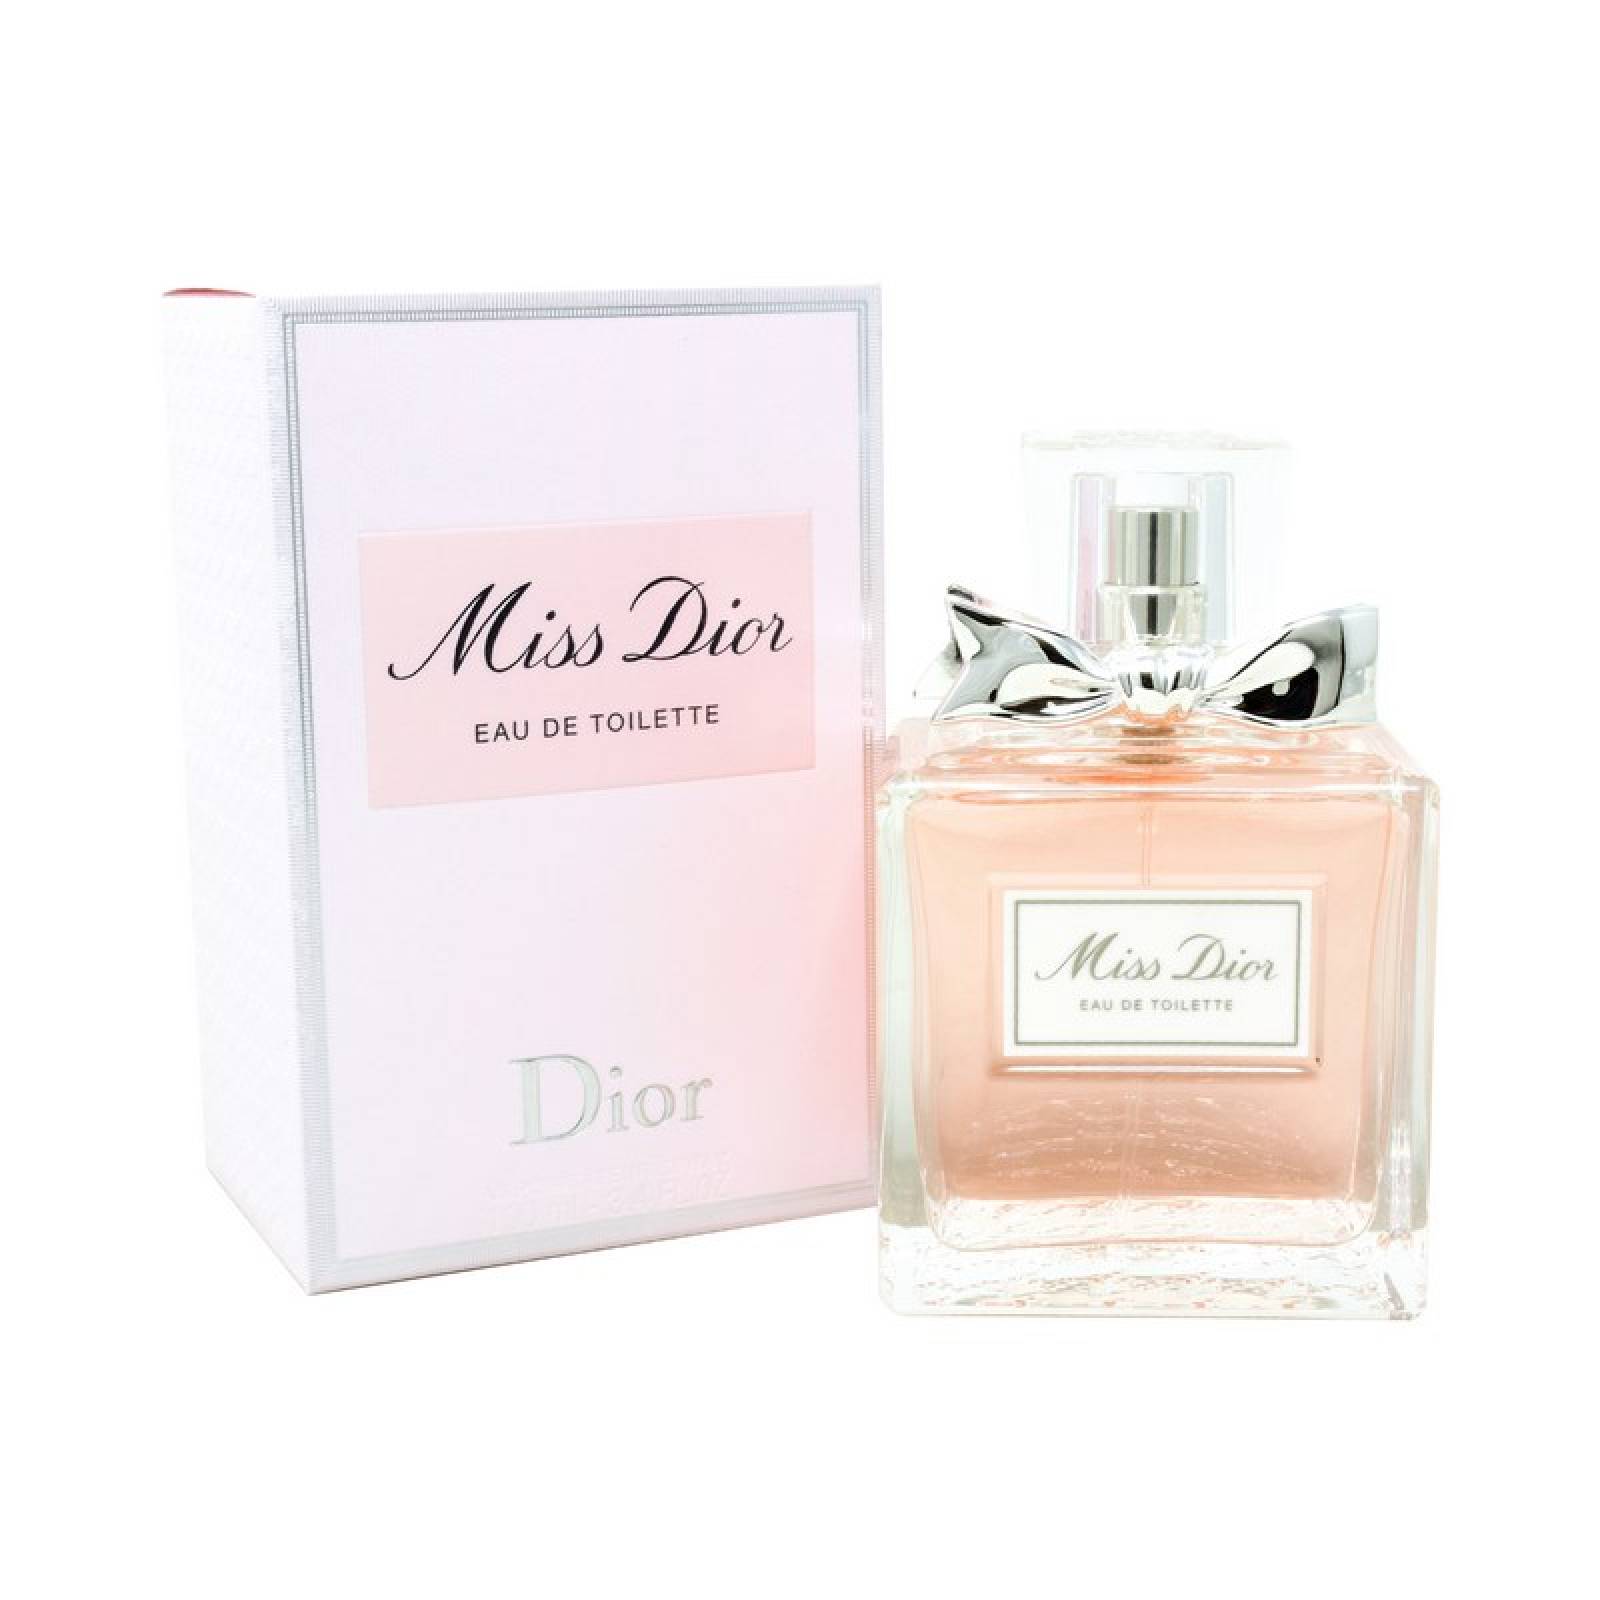 Miss Dior 100 ml Eau de Toilette de Christian Dior